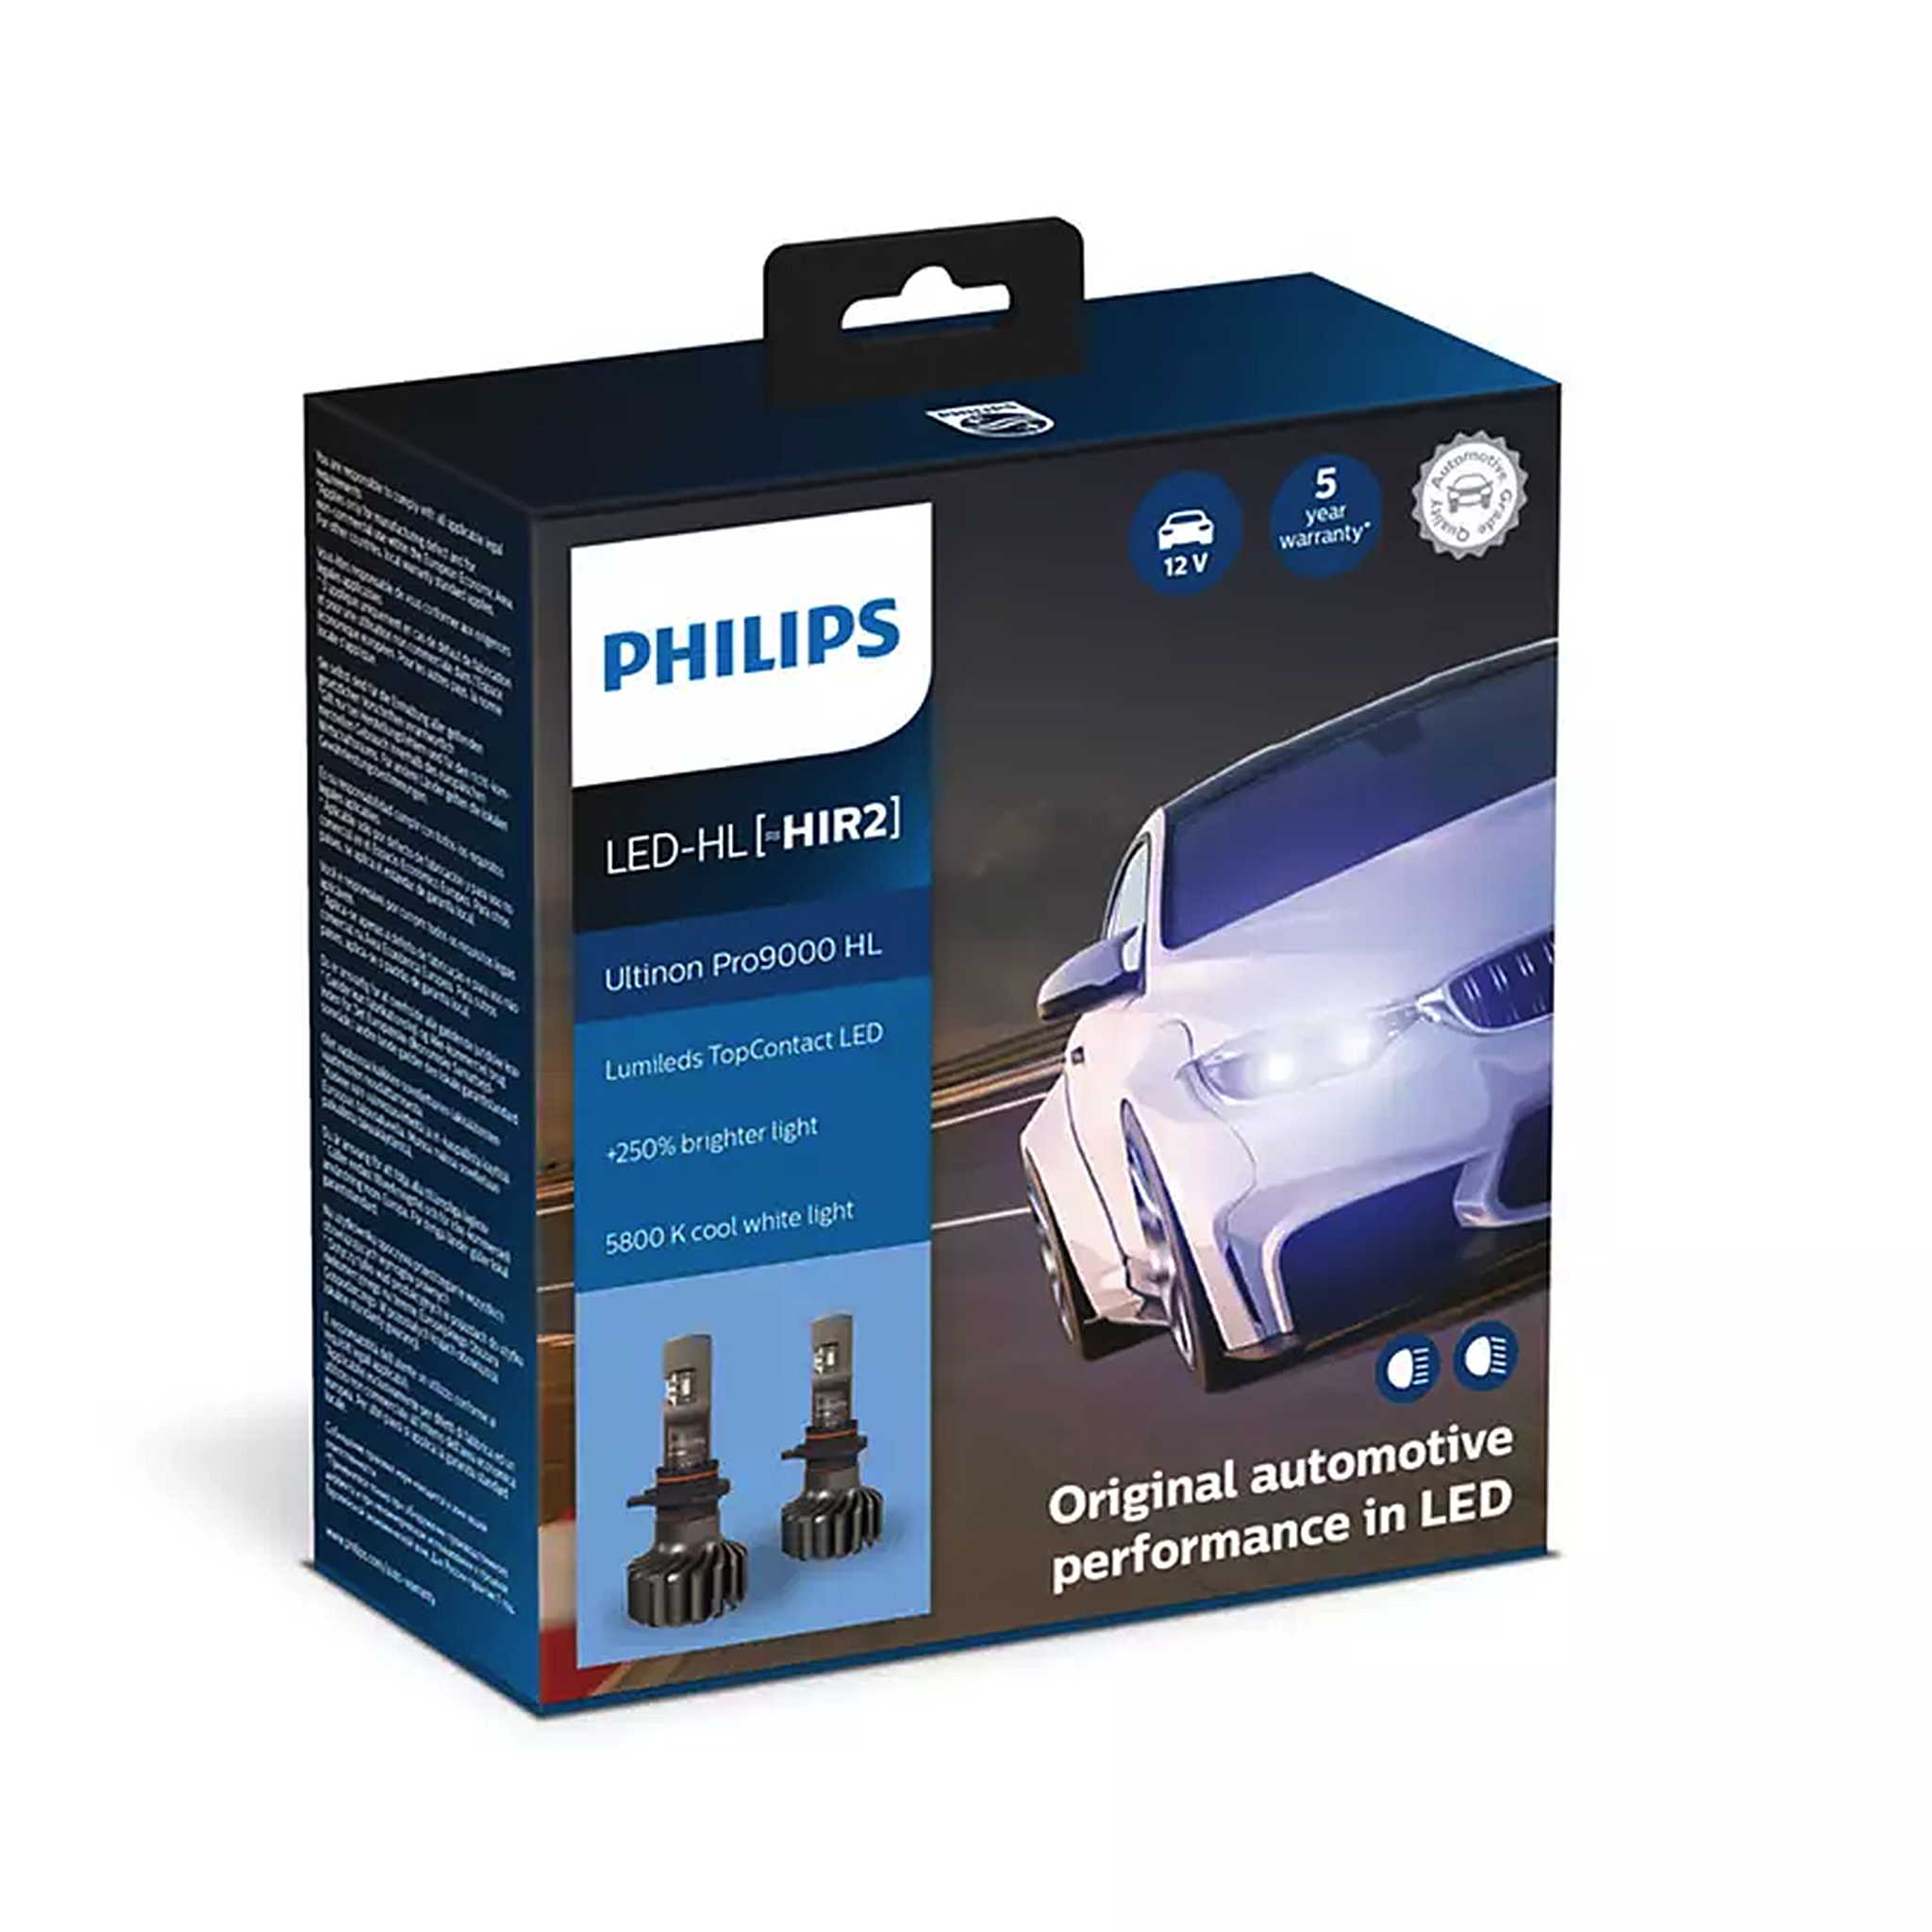 LED-pære PHILIPS Ultinon Pro9000 HL +250%, HIR2